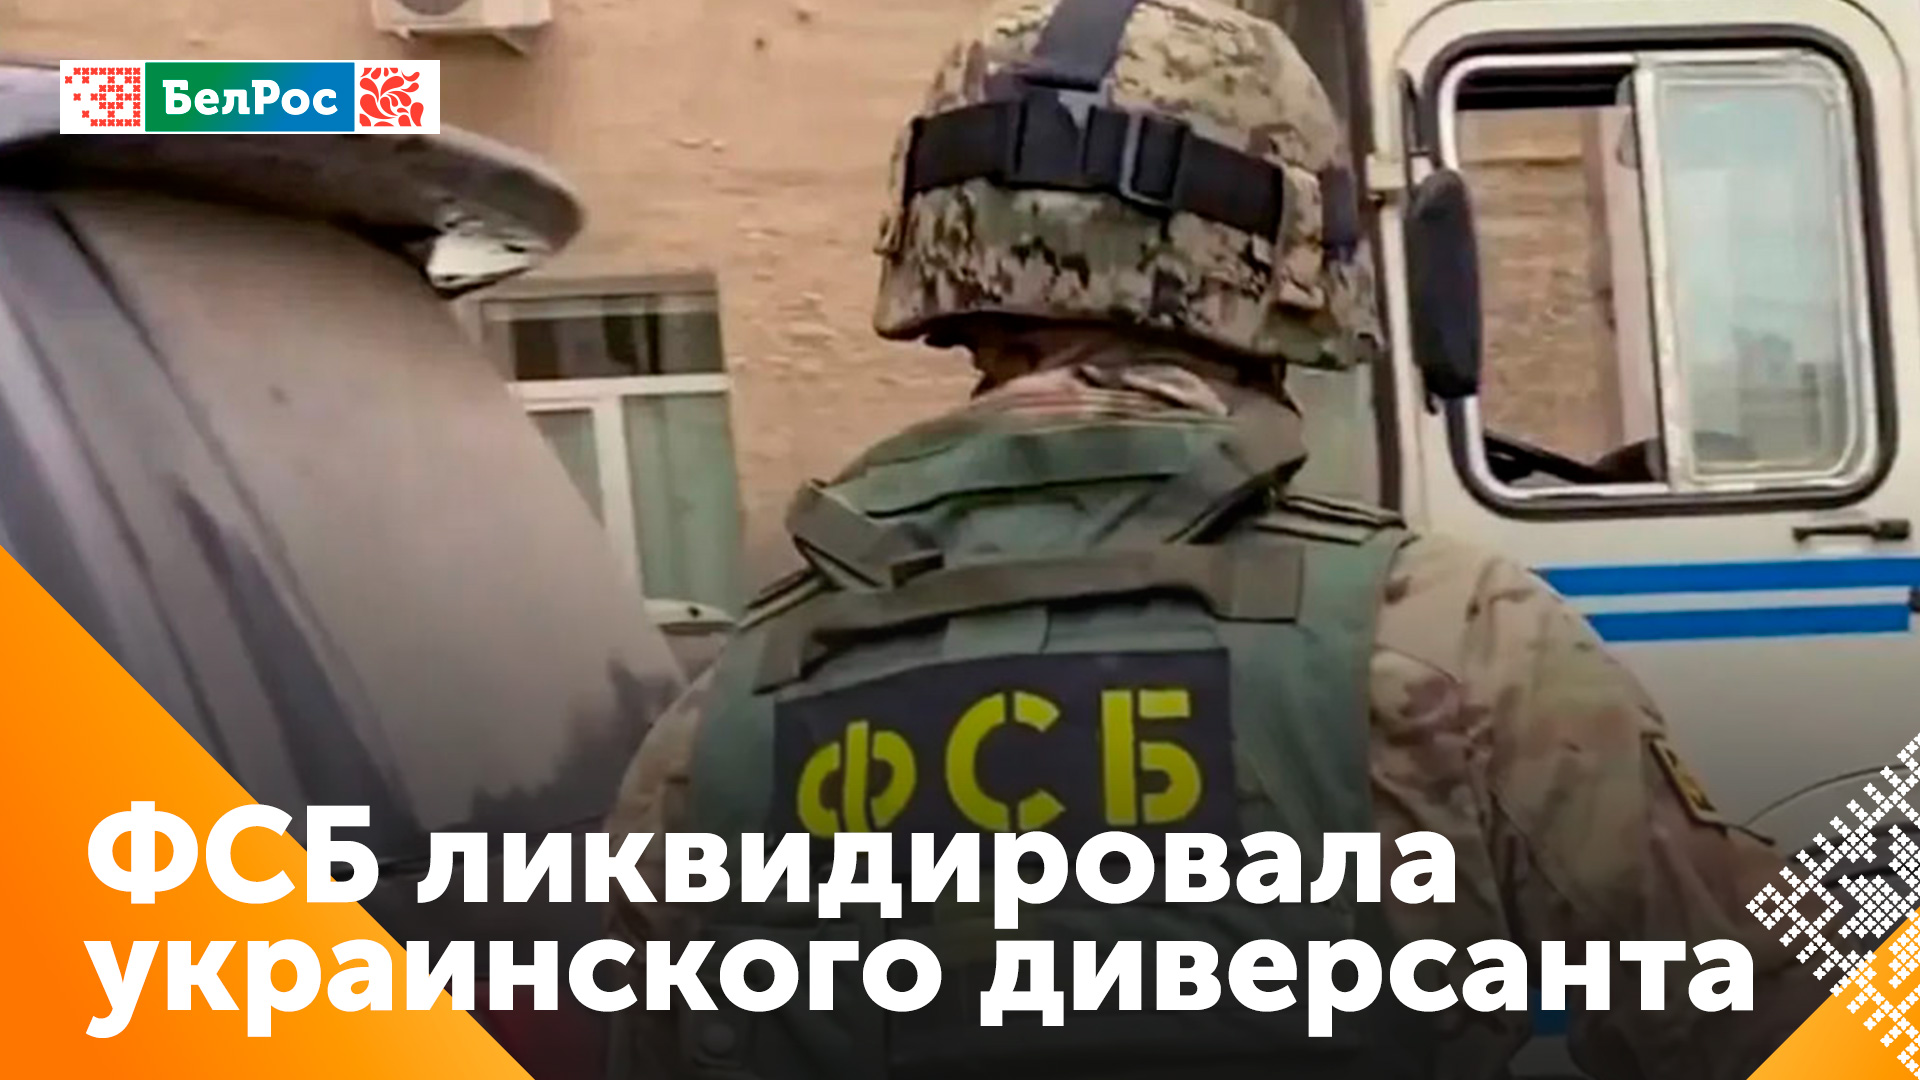 Агента украинской разведки ликвидировали в Ленинградской области